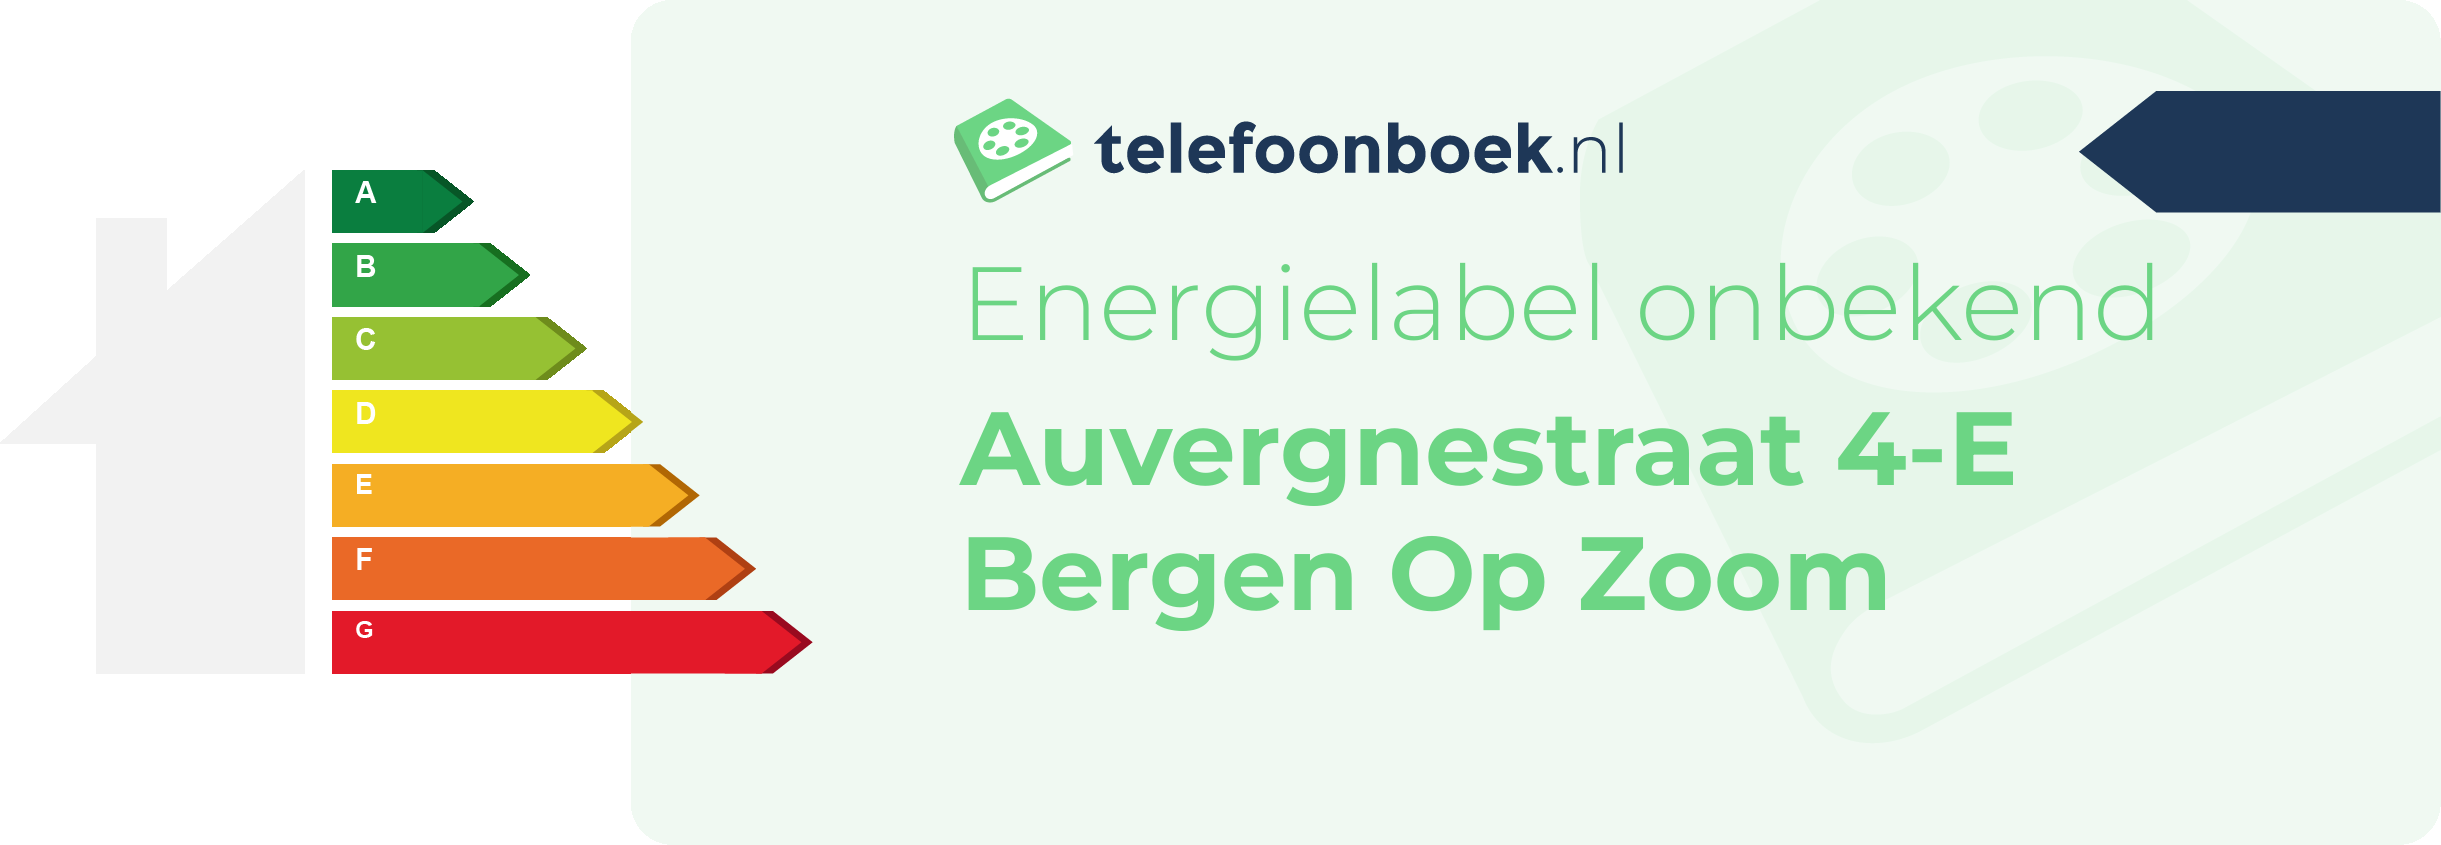 Energielabel Auvergnestraat 4-E Bergen Op Zoom